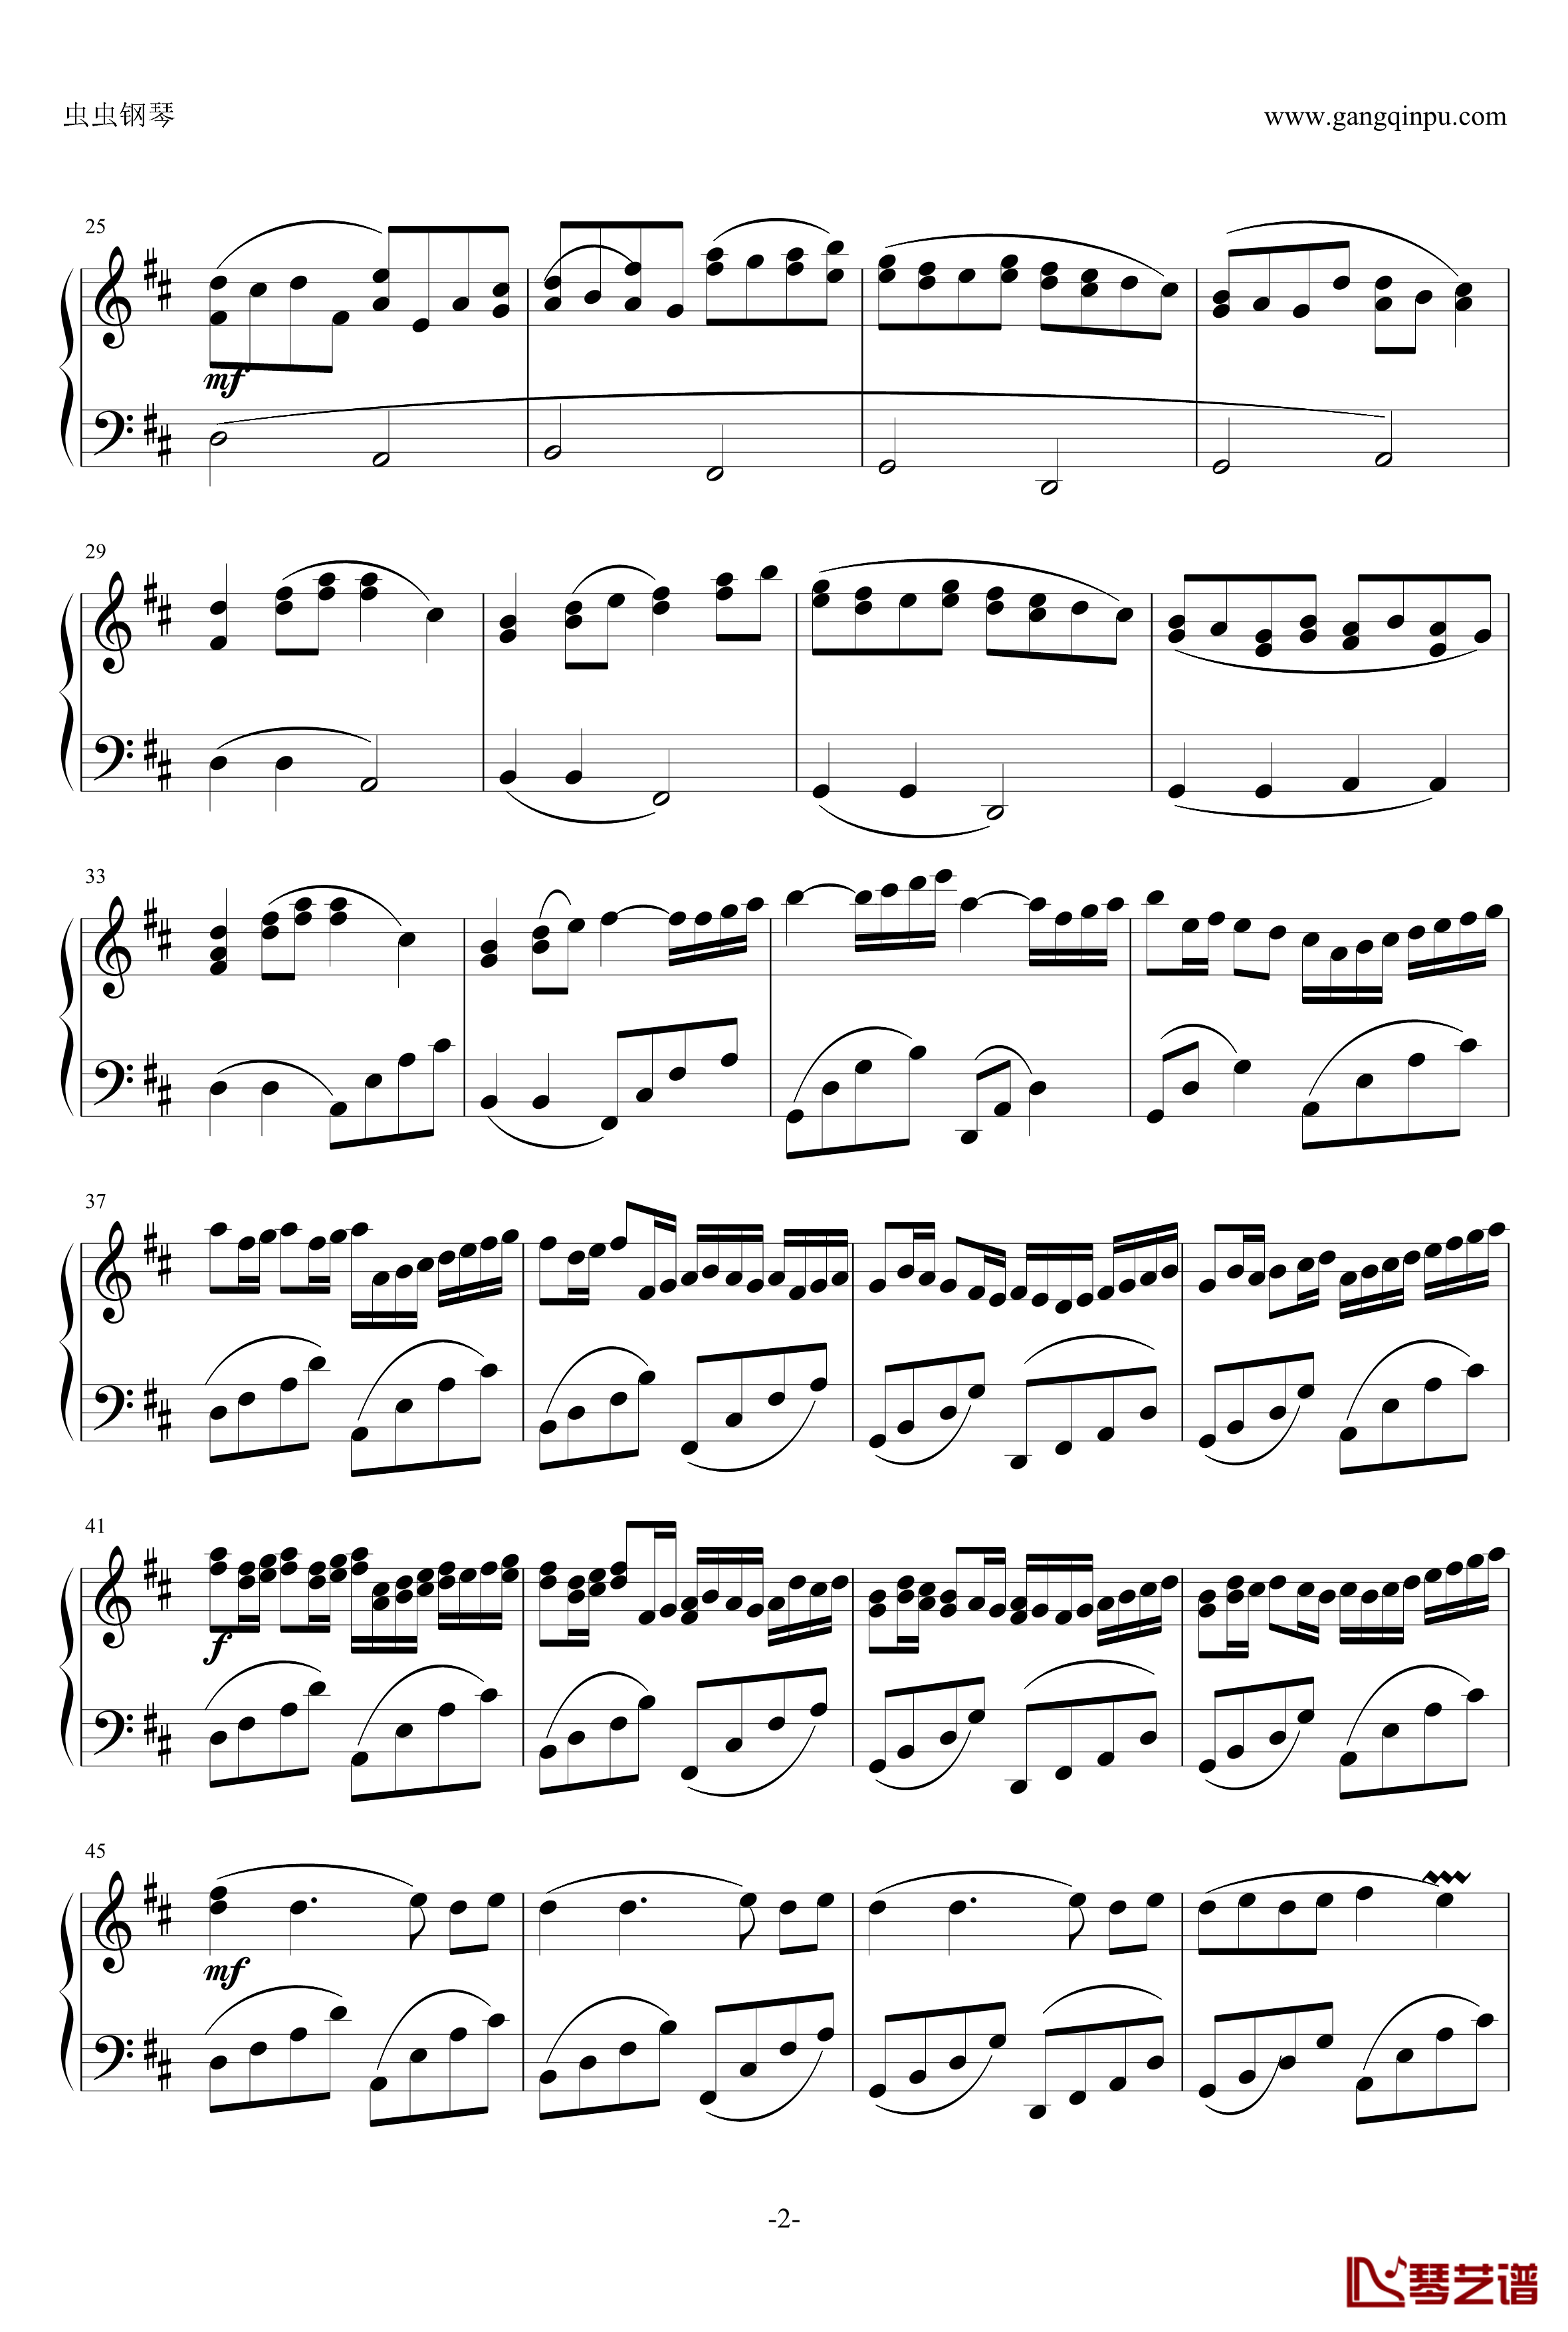 帕赫贝尔钢琴谱-Pacheble's Canon in D Long Version-Pachelbel2